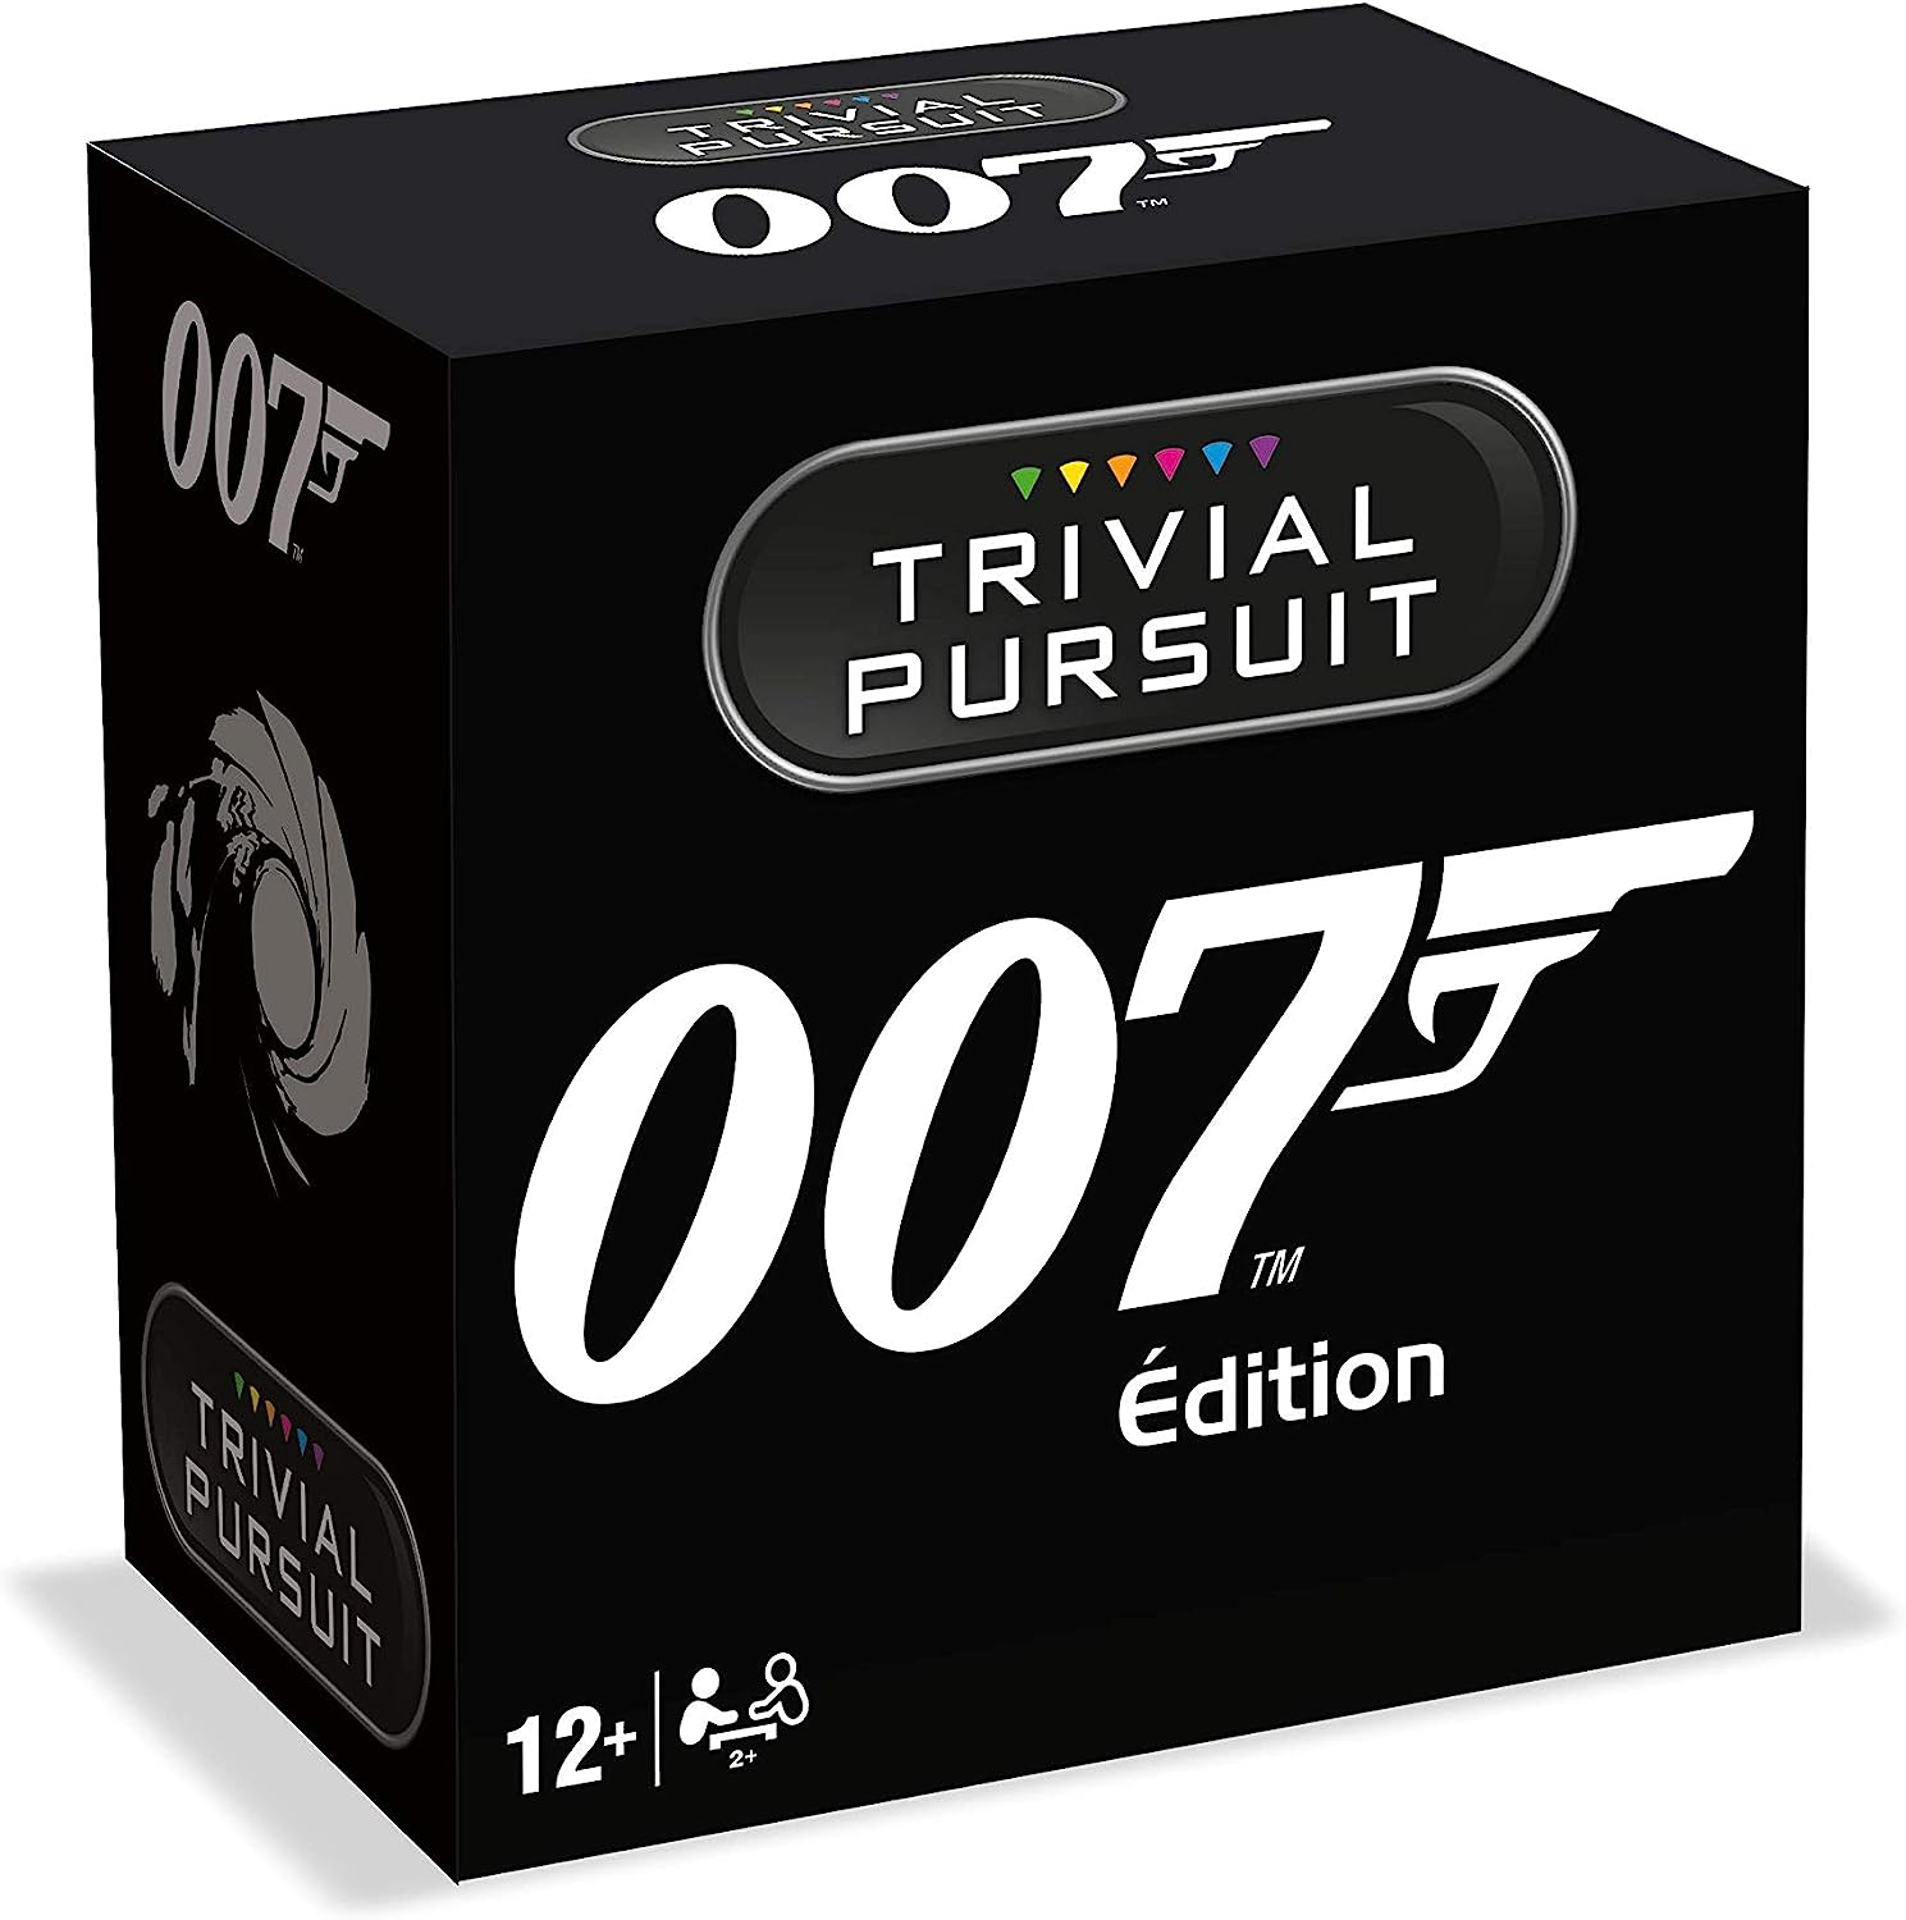 James Bond - Trivial Pursuit Edition de Voyage